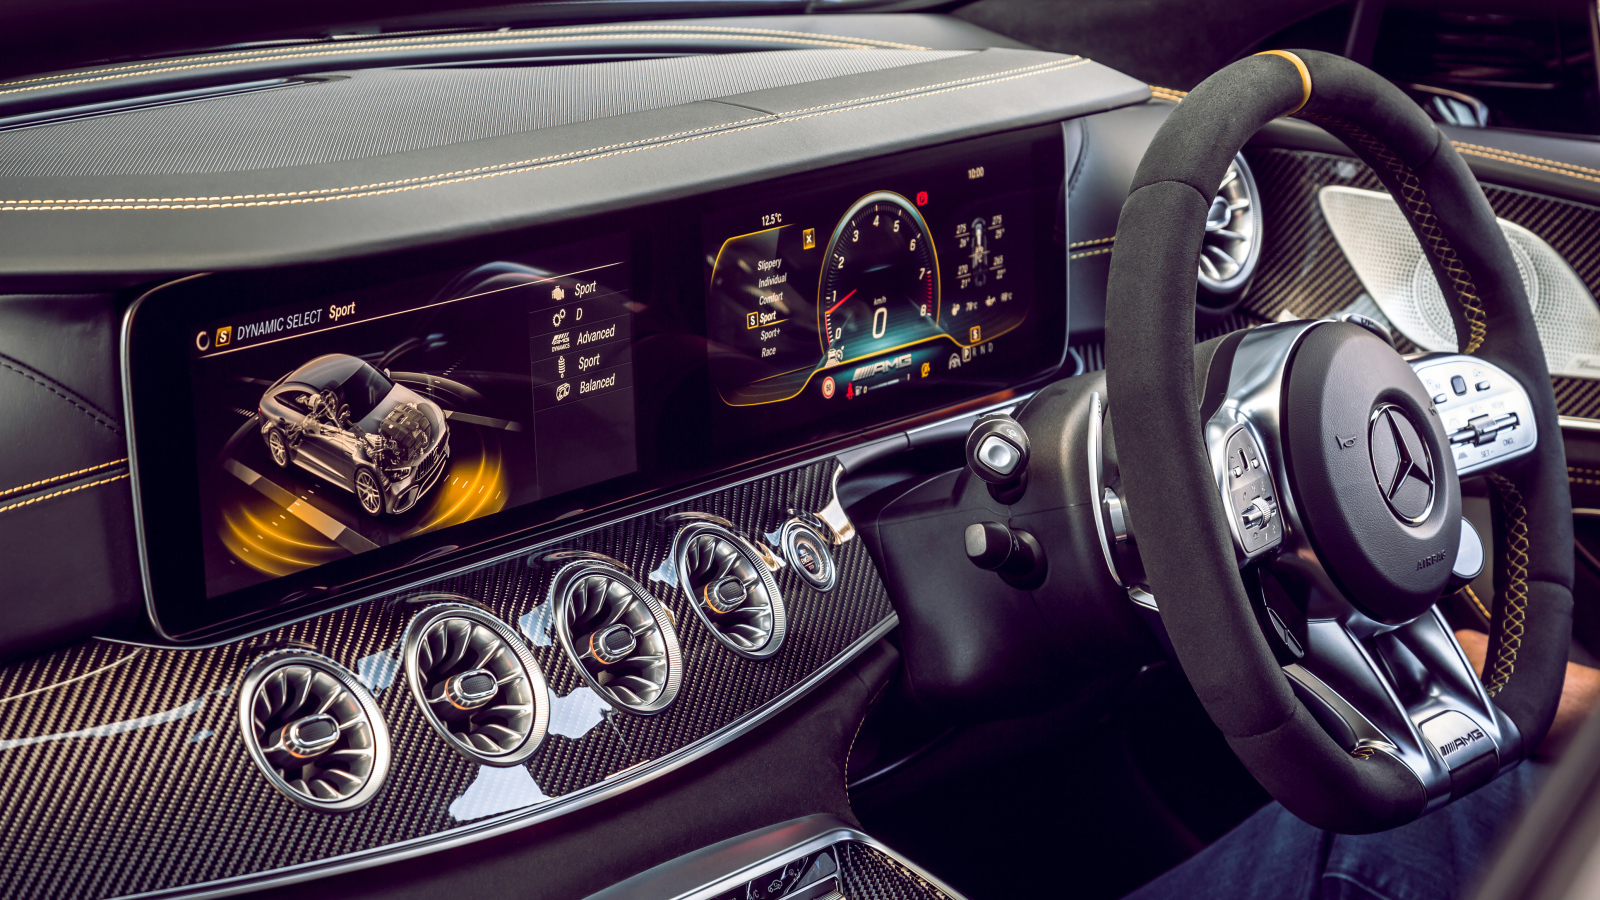 Приборная панель и руль автомобиля Mercedes-AMG GT 63 S 4MATIC 2019 года